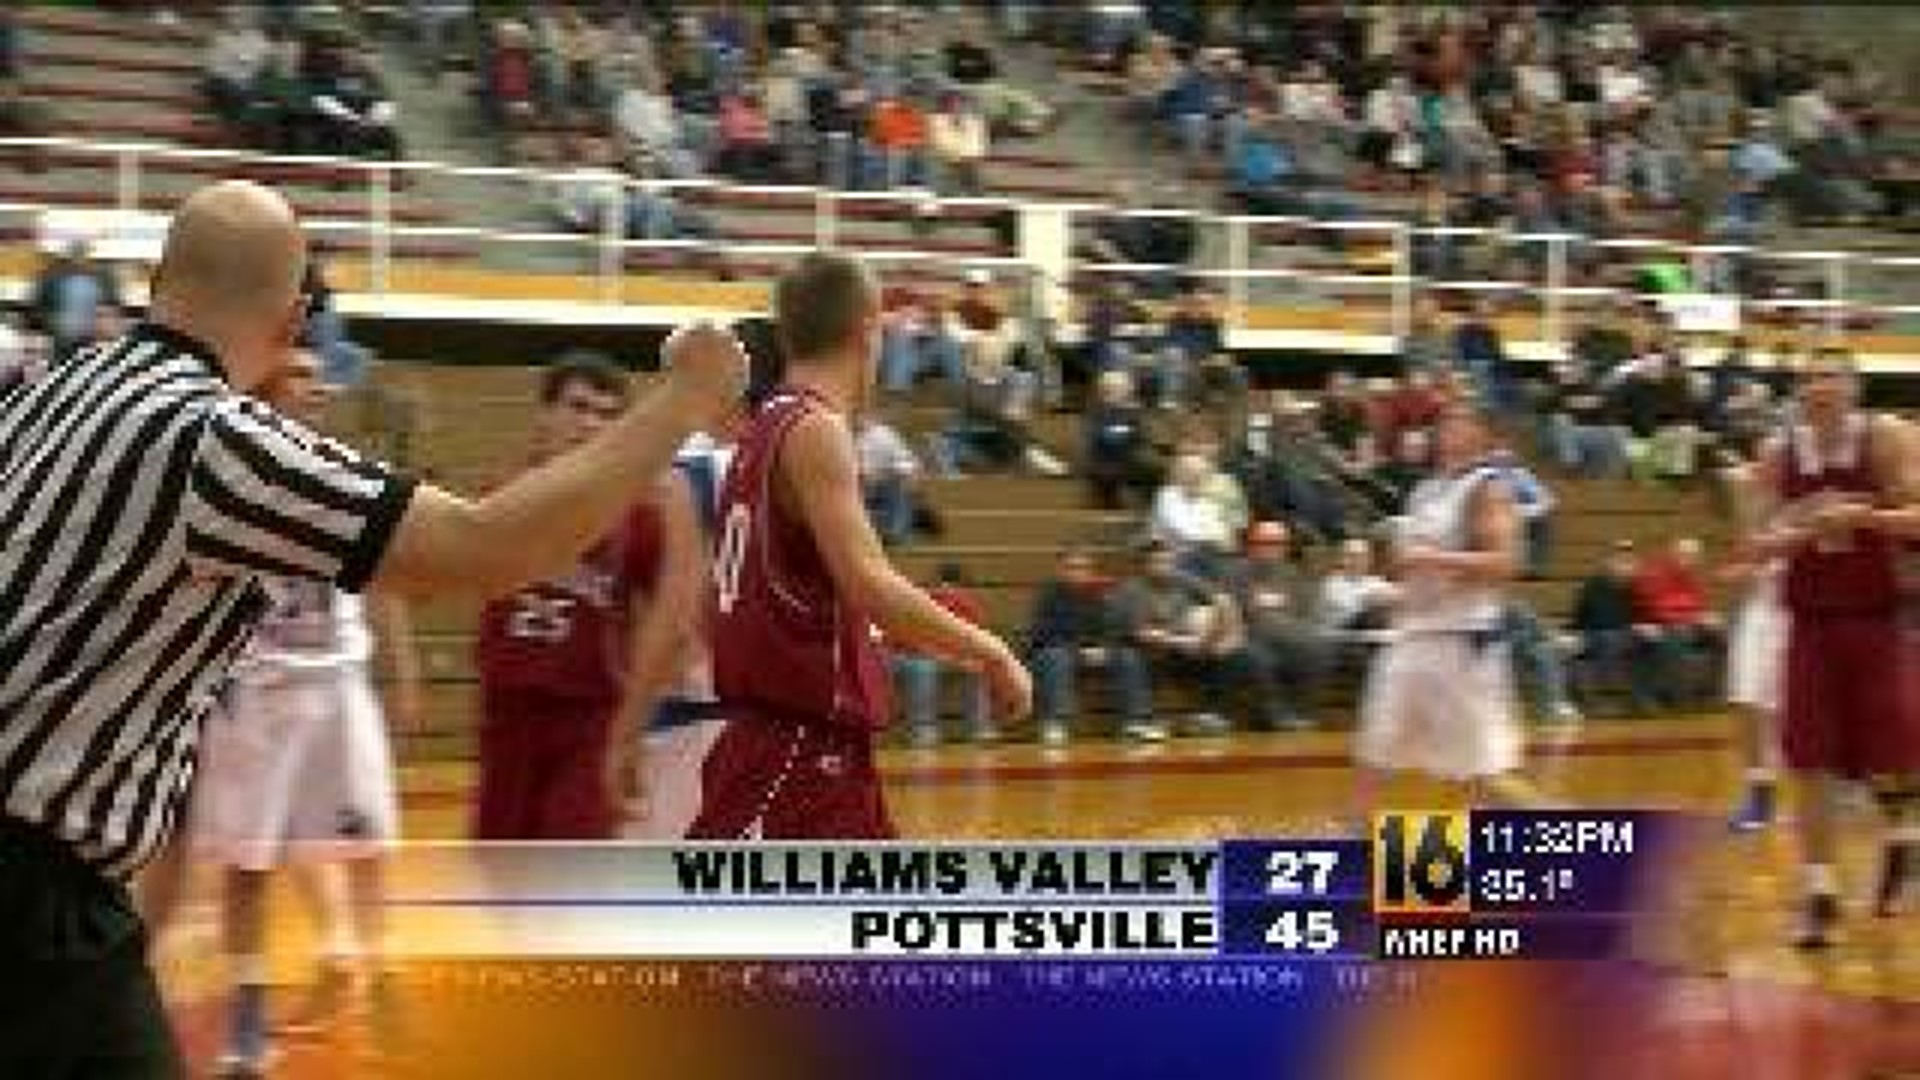 Pottsville vs Williams Valley